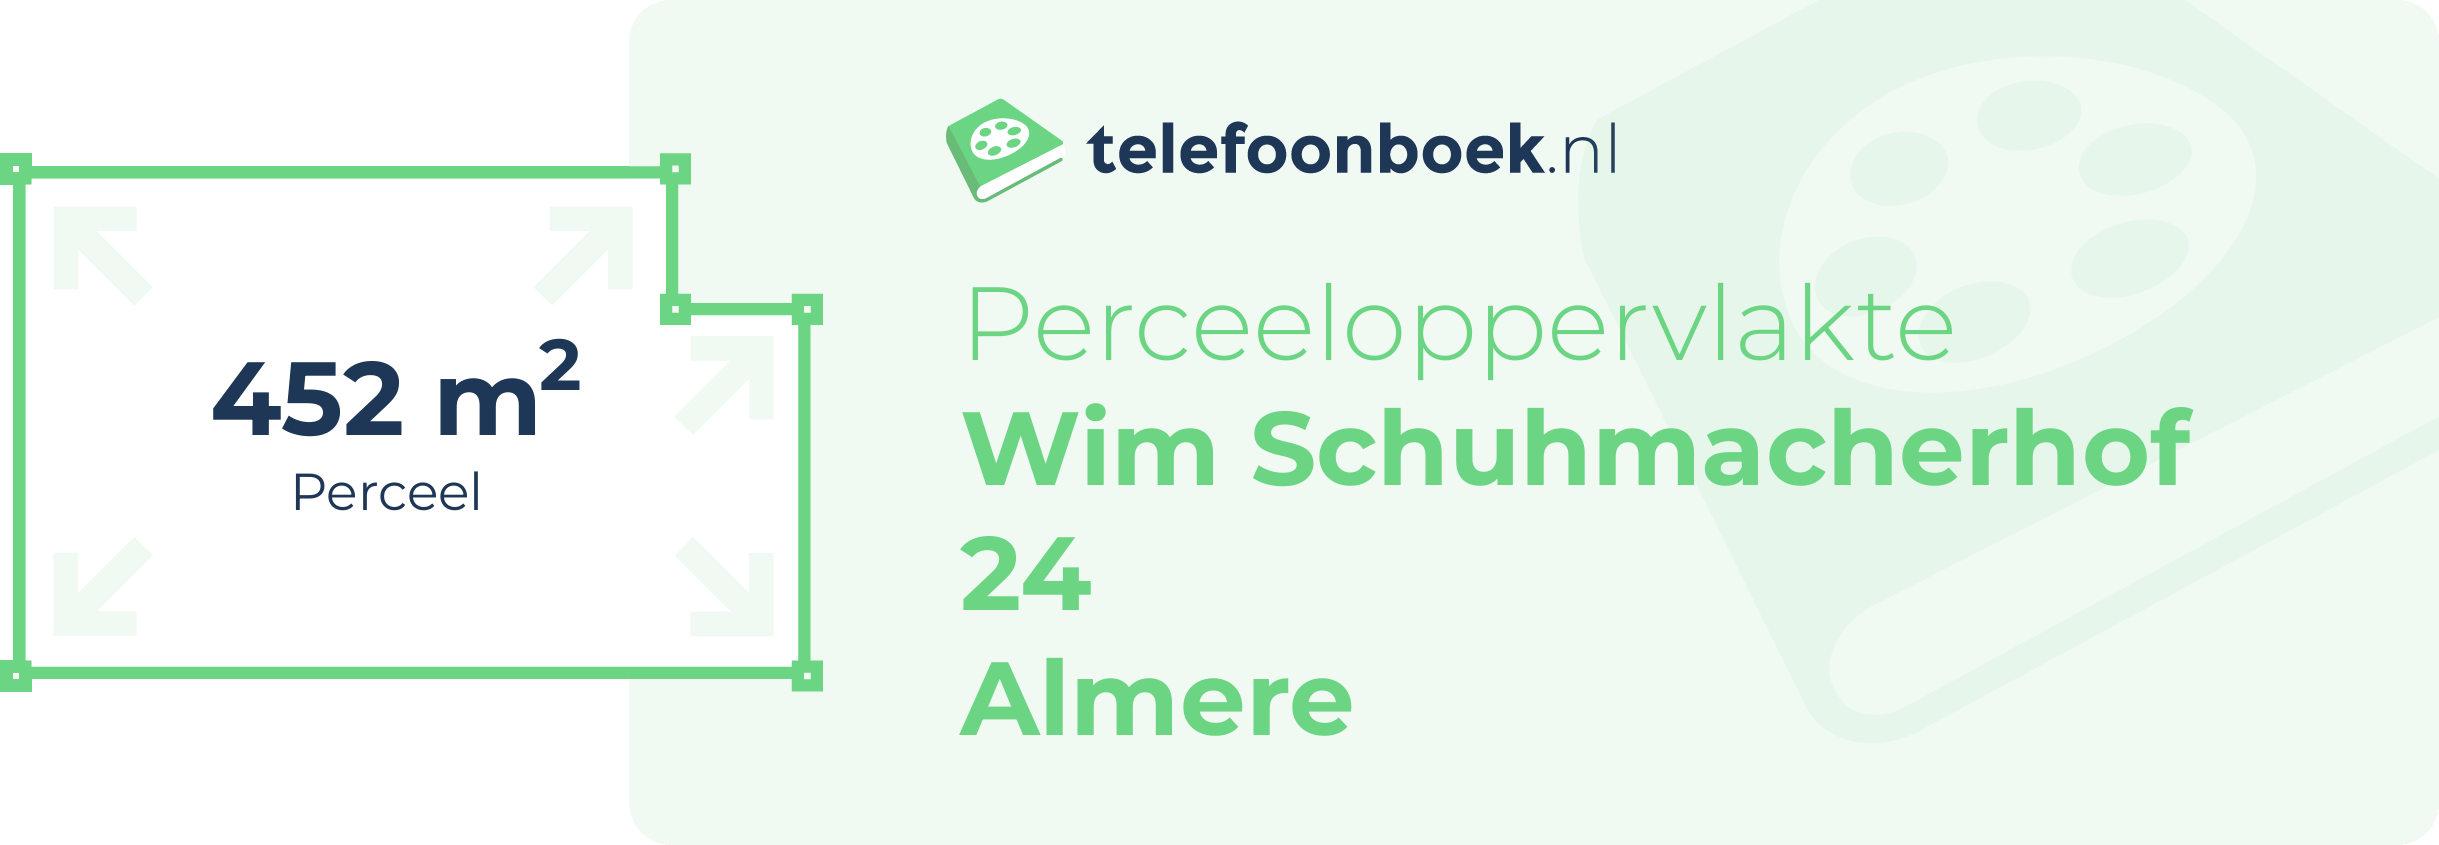 Perceeloppervlakte Wim Schuhmacherhof 24 Almere